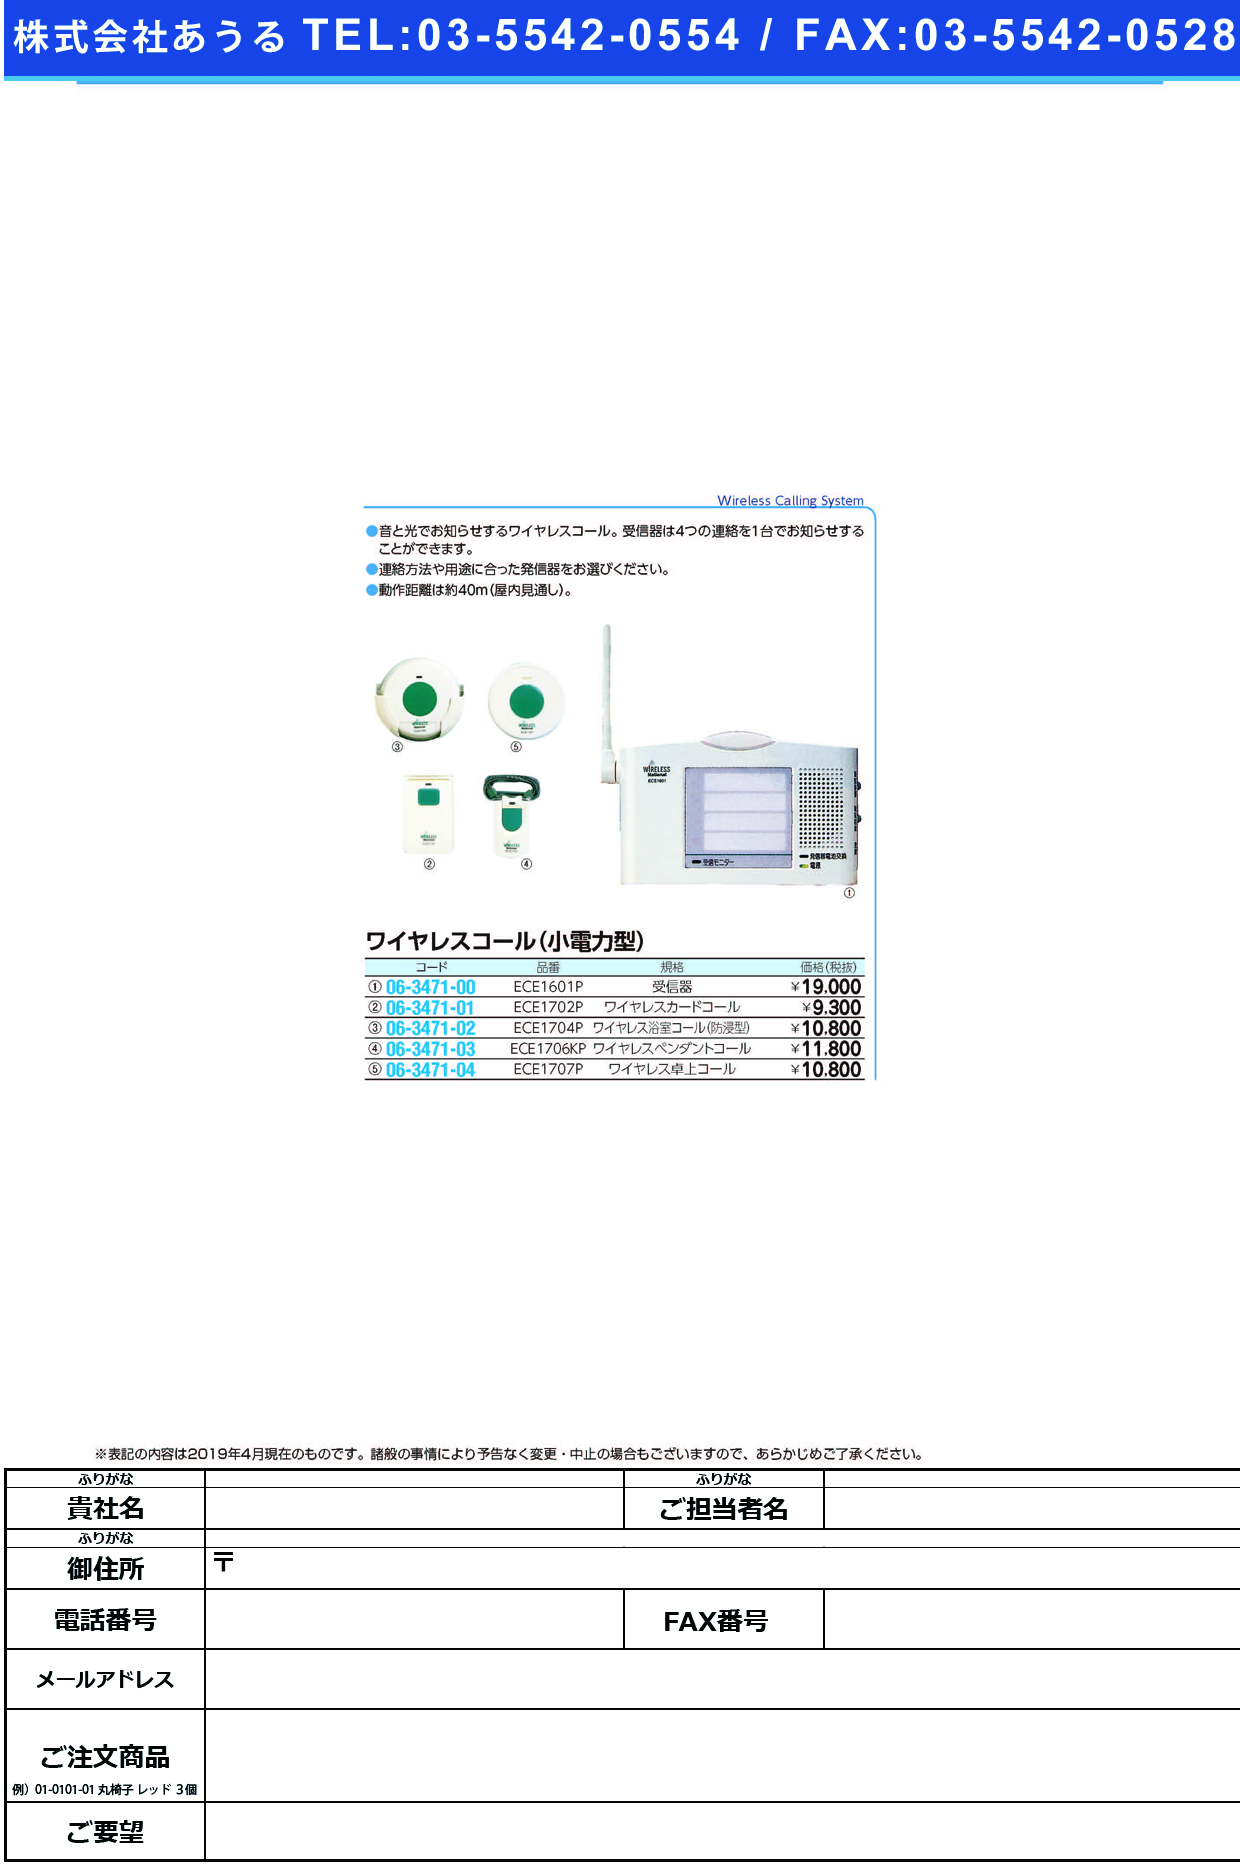 (06-3471-00)ワイヤレスコール卓上受信器 ECE1601P ﾜｲﾔﾚｽｺｰﾙﾀｸｼﾞｮｳｼﾞｭｼﾝｷ【1台単位】【2019年カタログ商品】